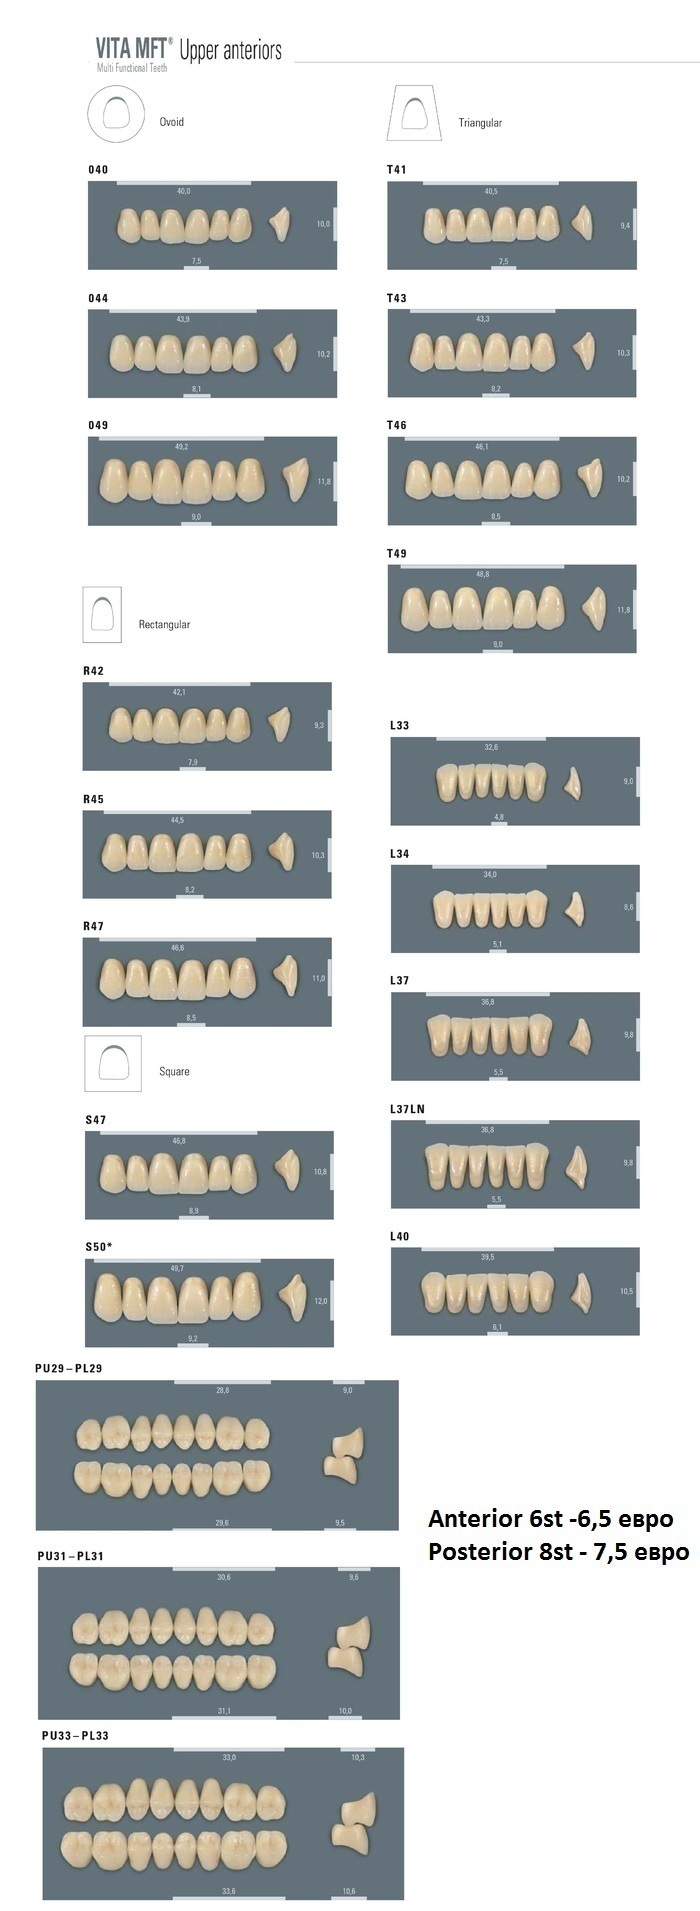 Зубы MFT VITA,Gnathostar были отобраны на 17 самых популярных фасонах, в 3 боковых размерах и в 11 цветах. Zooble.com.ua